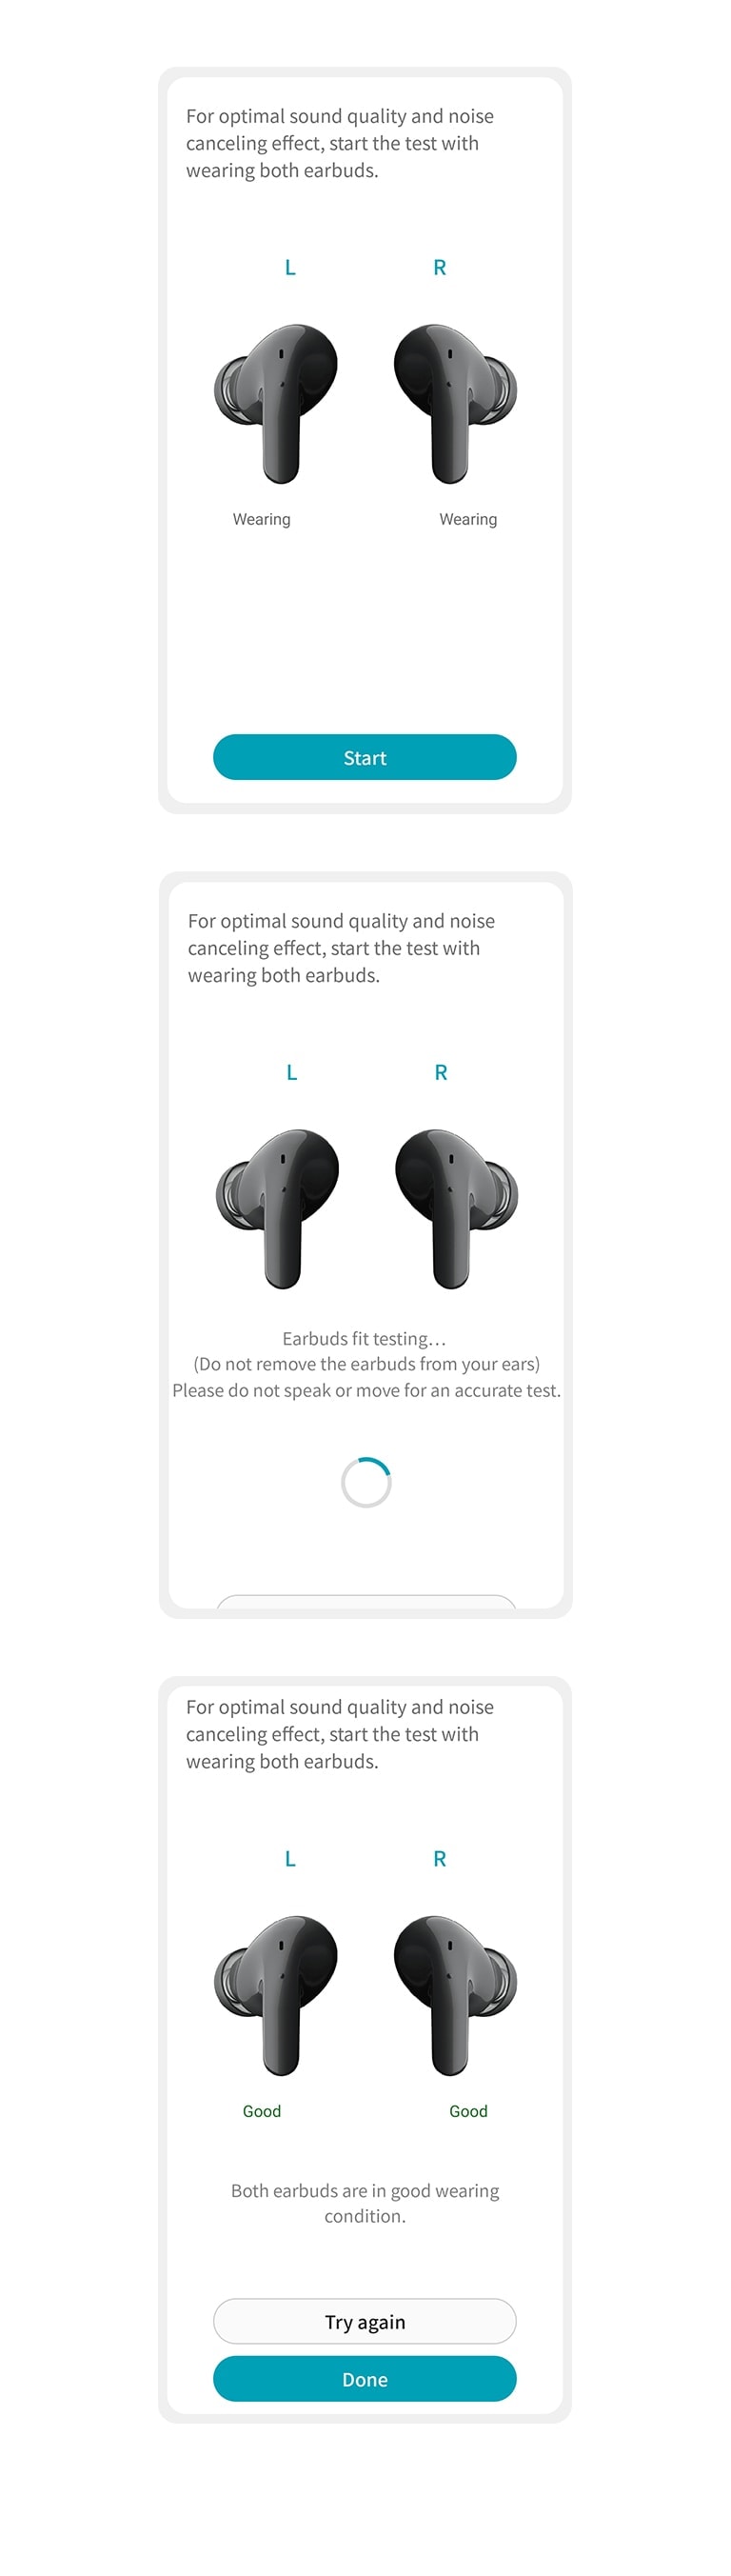 Immagini dell’app che presenta suggerimenti su come regolare gli auricolari per garantire un adattamento ottimale.